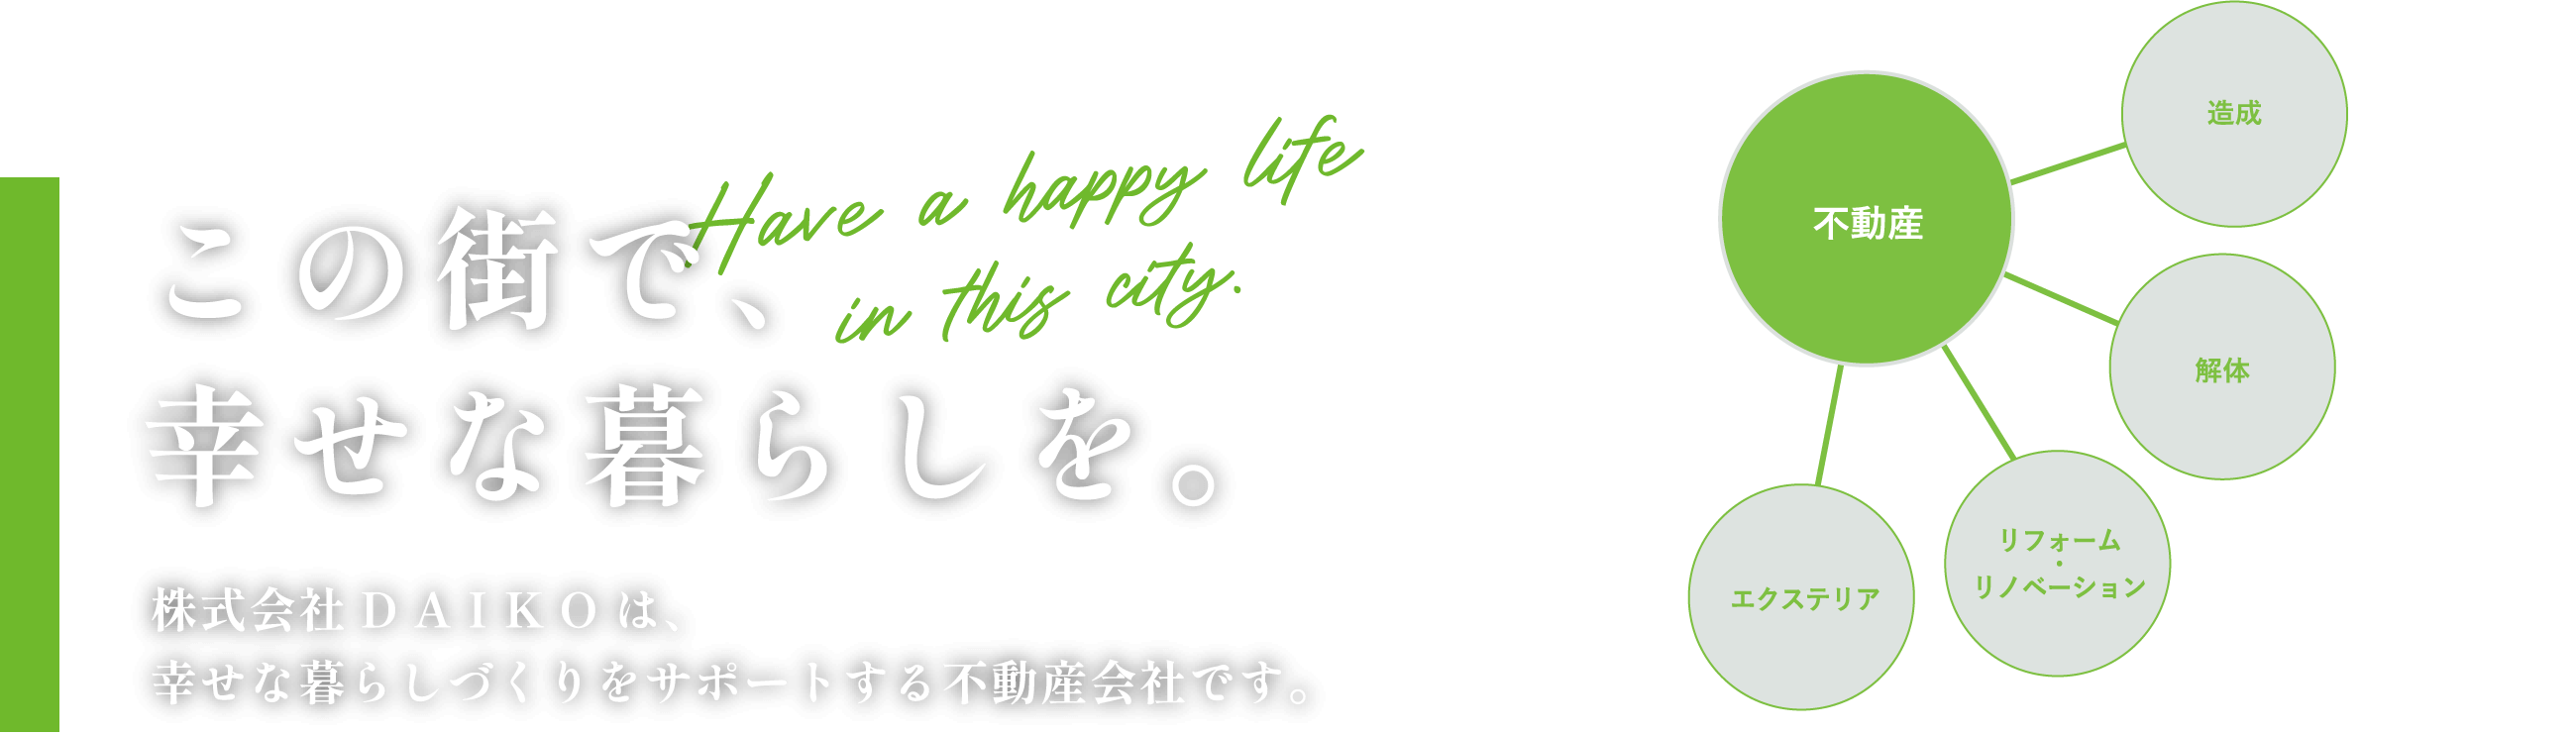 この街で、幸せな暮らしを。Have a happy life in this city.　株式会社DAIKOは、幸せな暮らしづくりをサポートする不動産会社です。